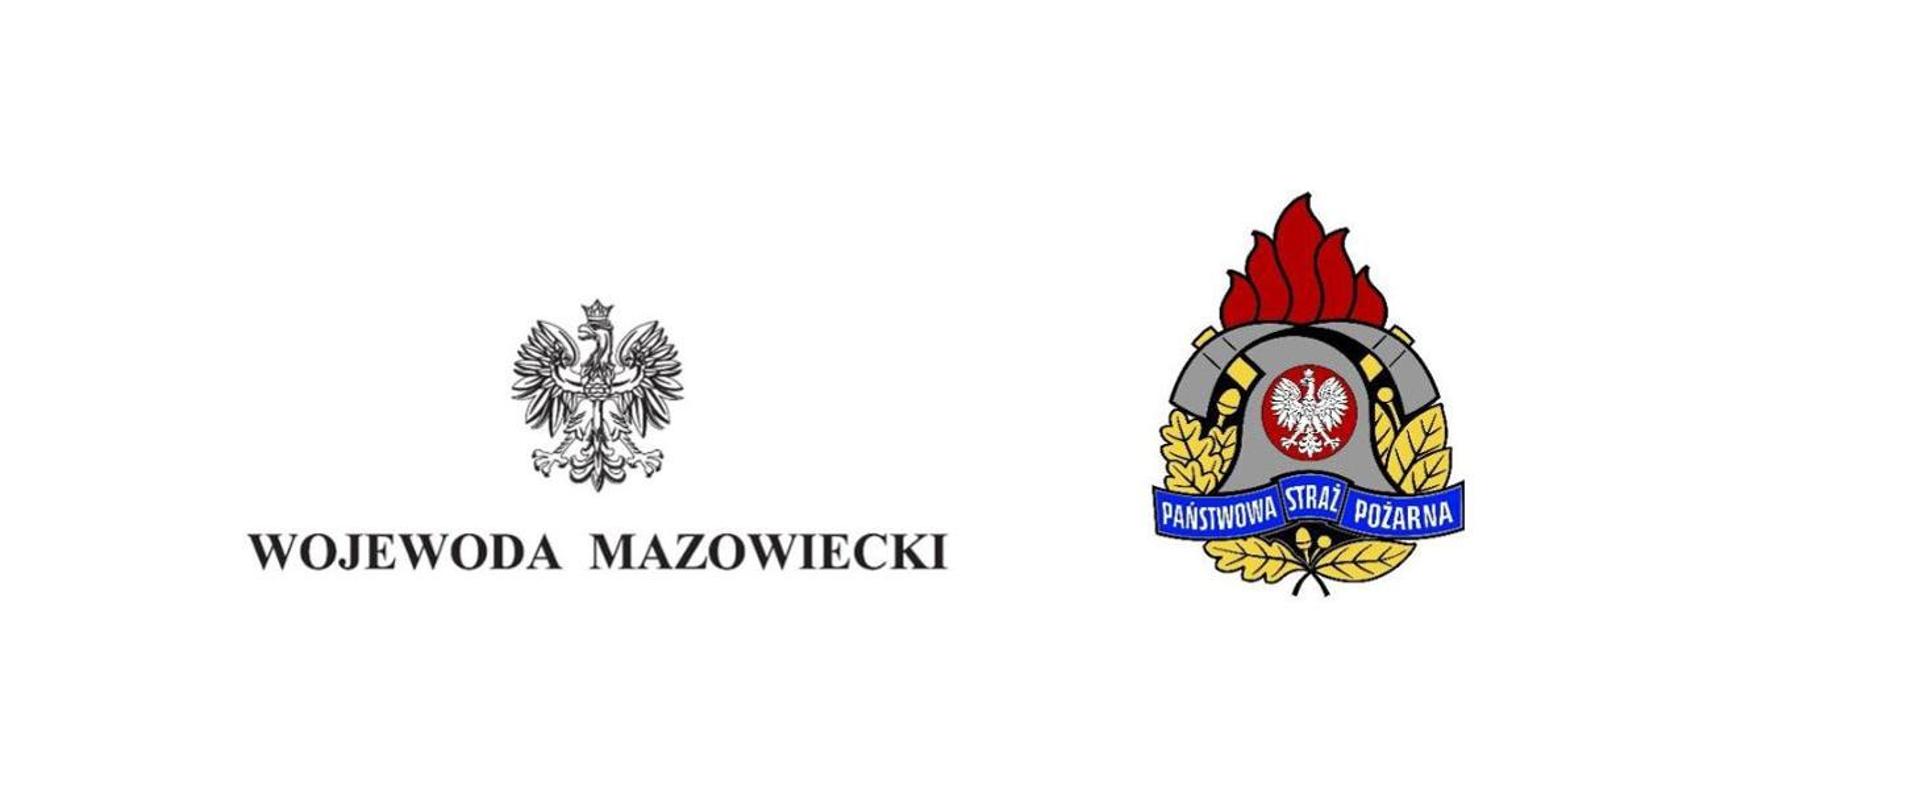 Grafika przedstawia: po lewej stronie na białym tle biały orzeł godło państwa i czarny napis Wojewoda Mazowiecki, po prawej stronie srebrny hełm strażacki z białym orłem, z tyłu dwa skrzyżowane toporki, u góry czerwone płomienie, poniżej złote liście dębowe i niebieska wstęga z napisem Państwowa Straż Pożarna
